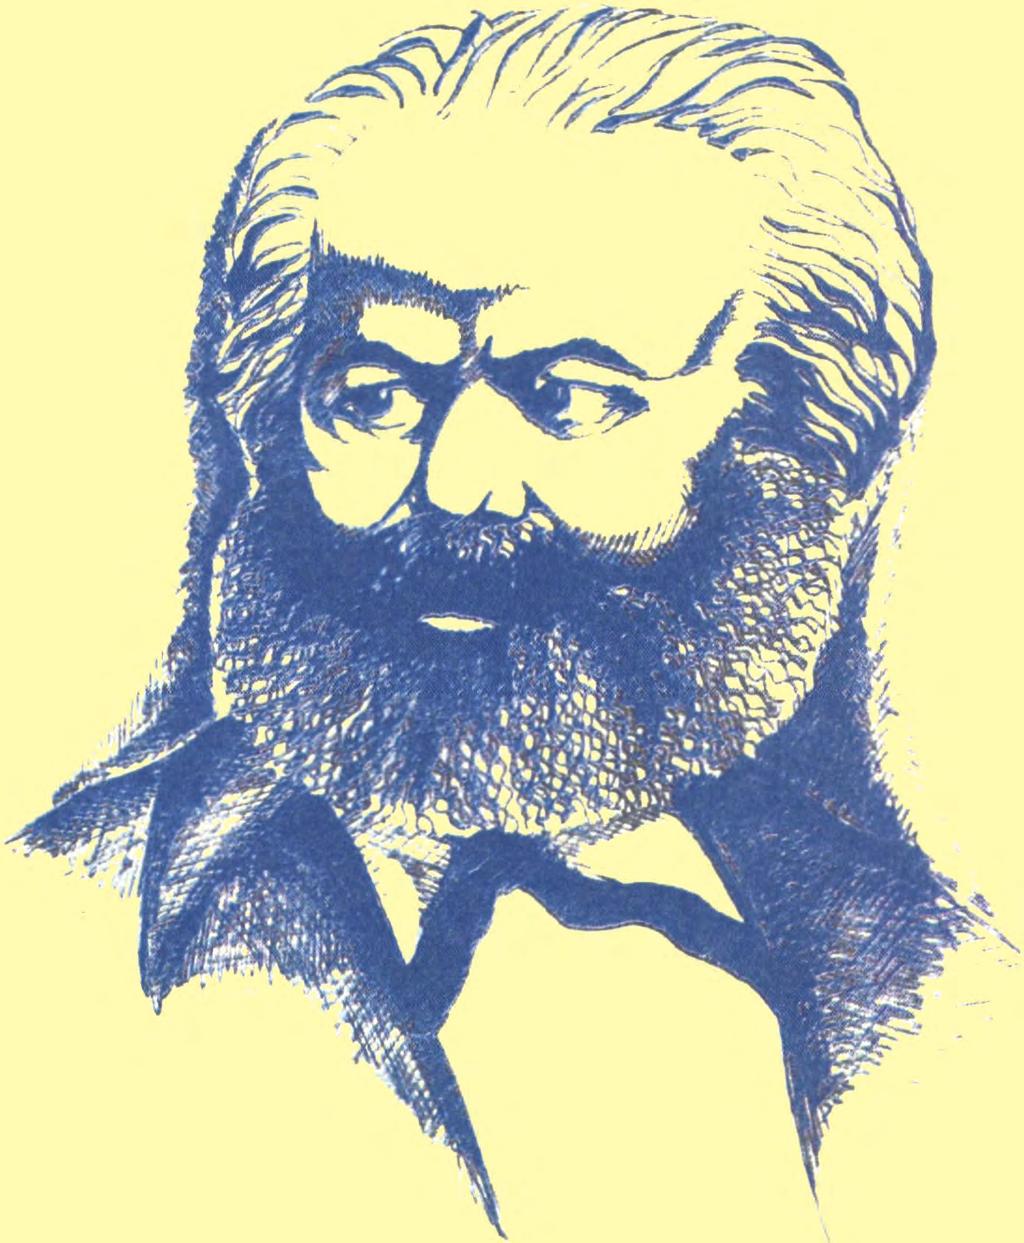 162 Ο Κάρολος Μαρξ (1818-1883) είναι ο θεμελιωτής του επιστημονικού σοσιαλισμού.